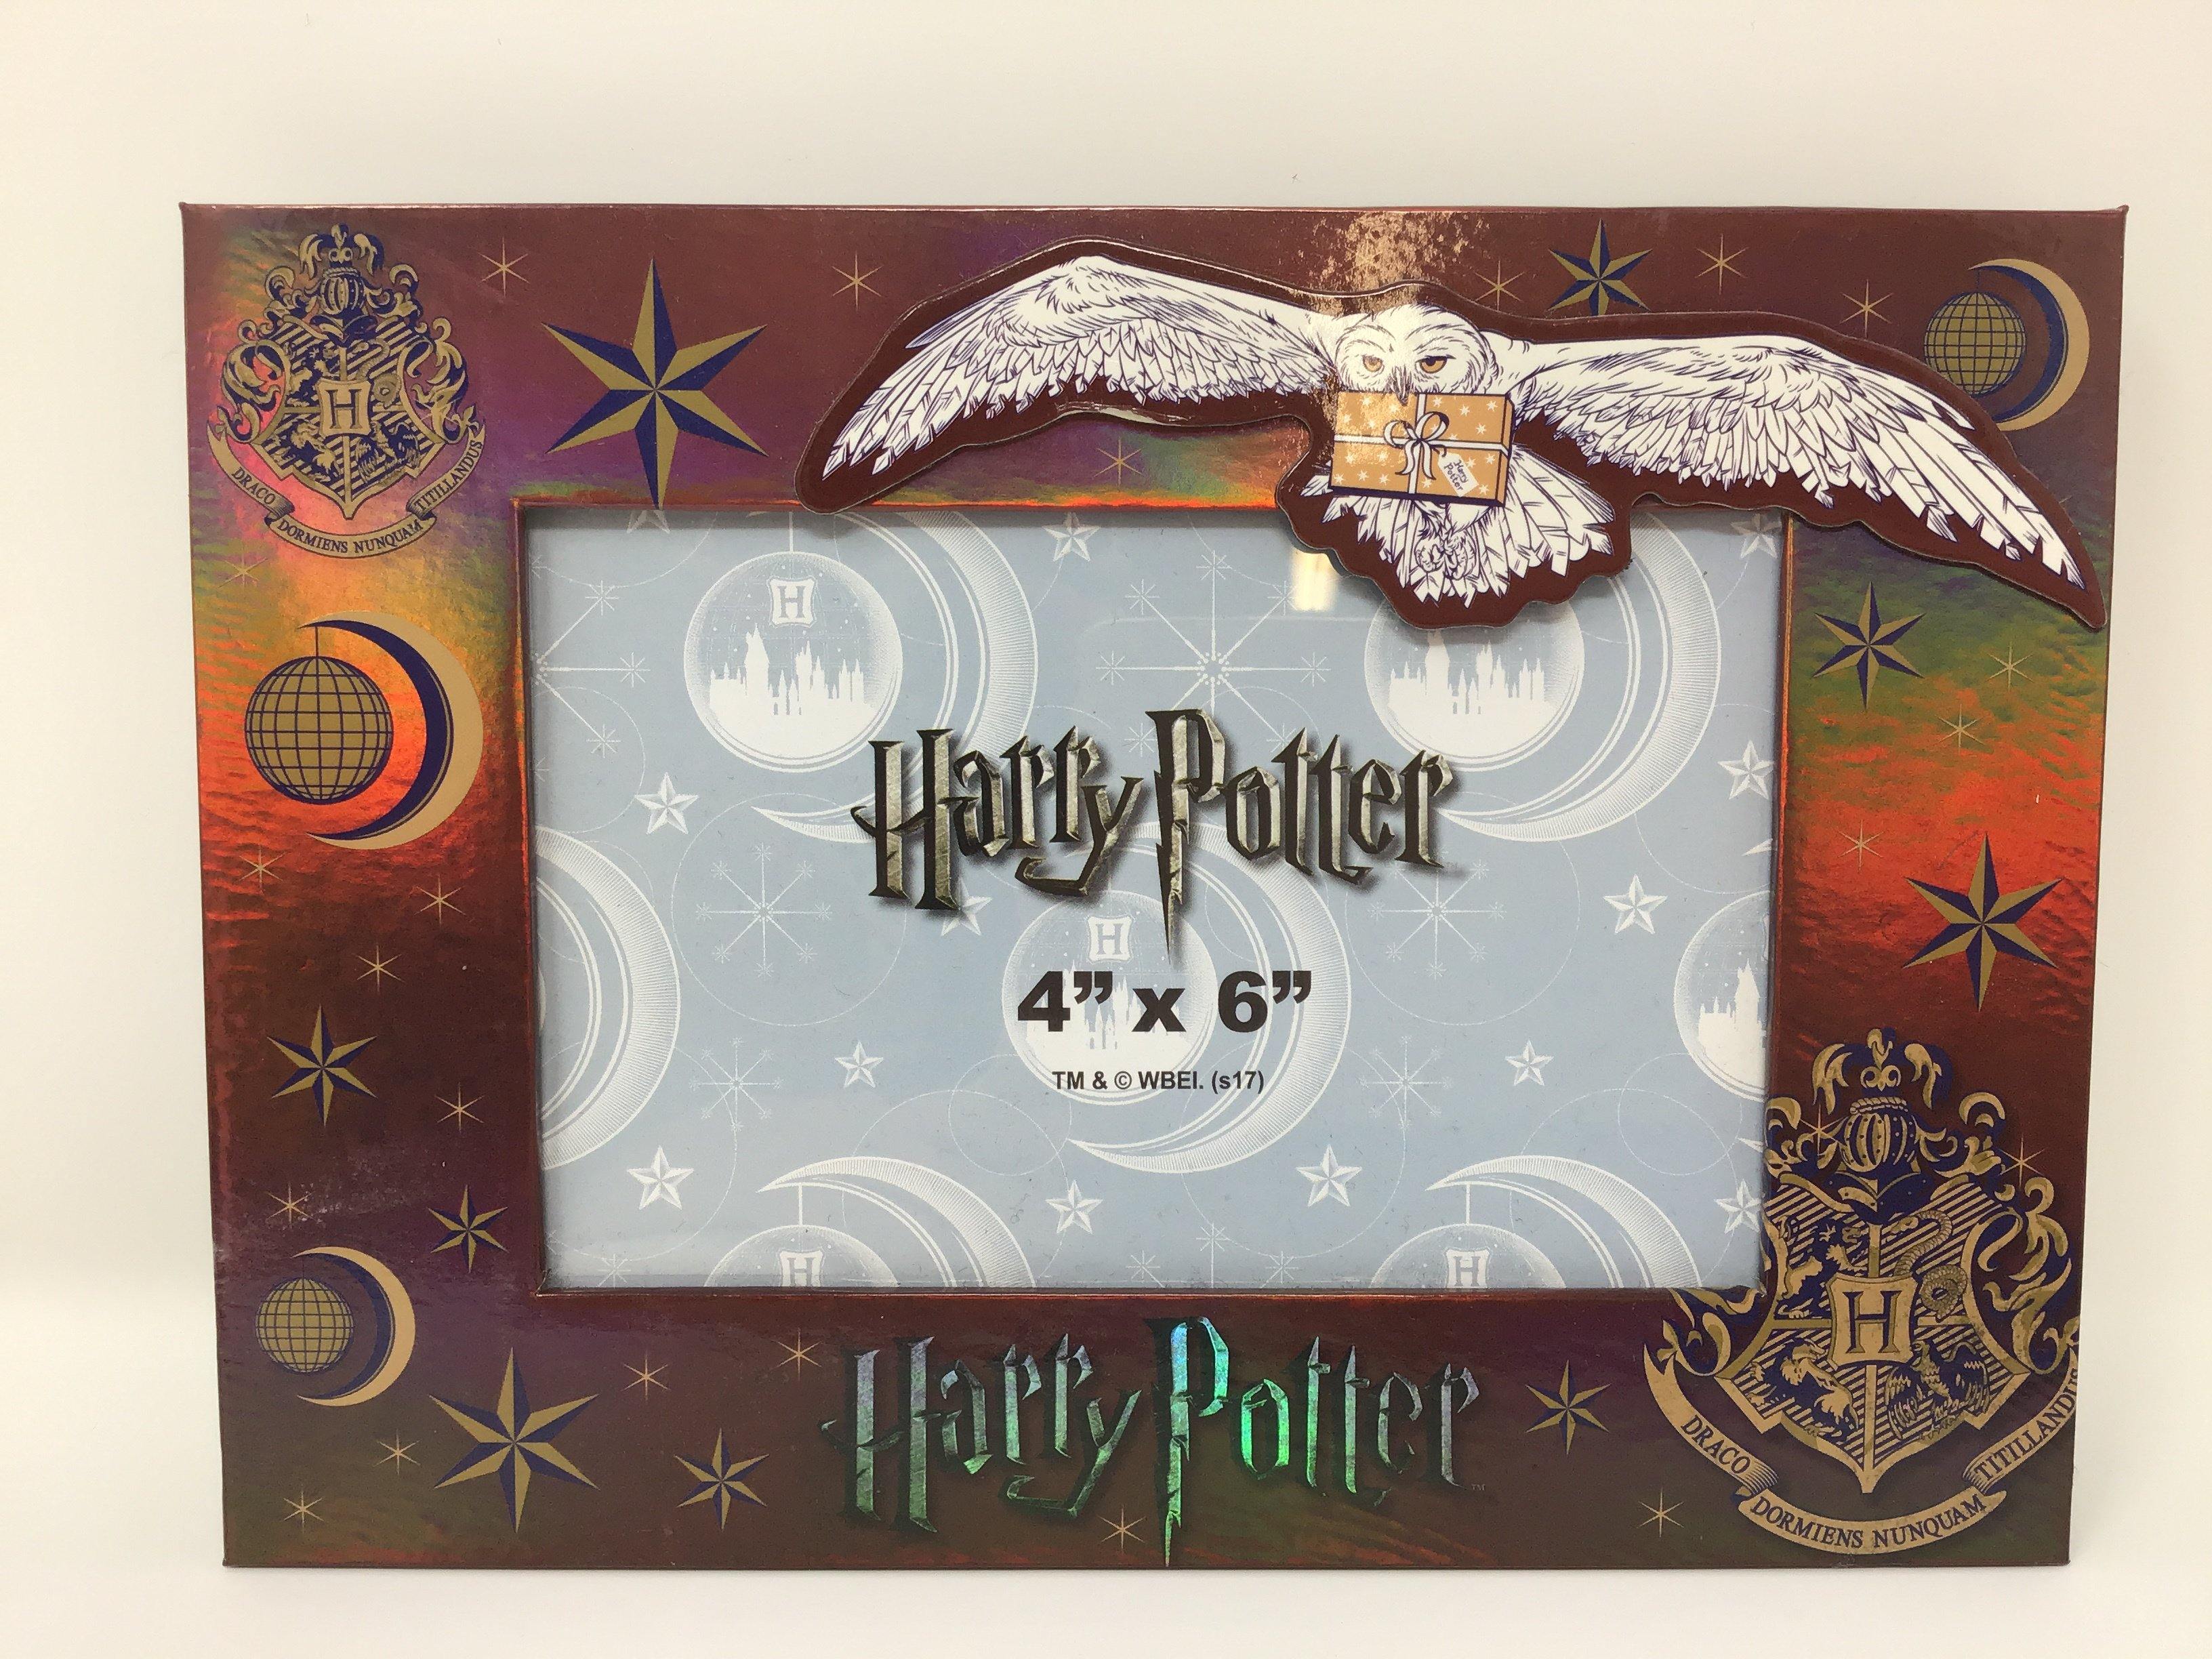 Harry Potter Magnet Cardboard Photo Frame 4"X 6" (Brown)